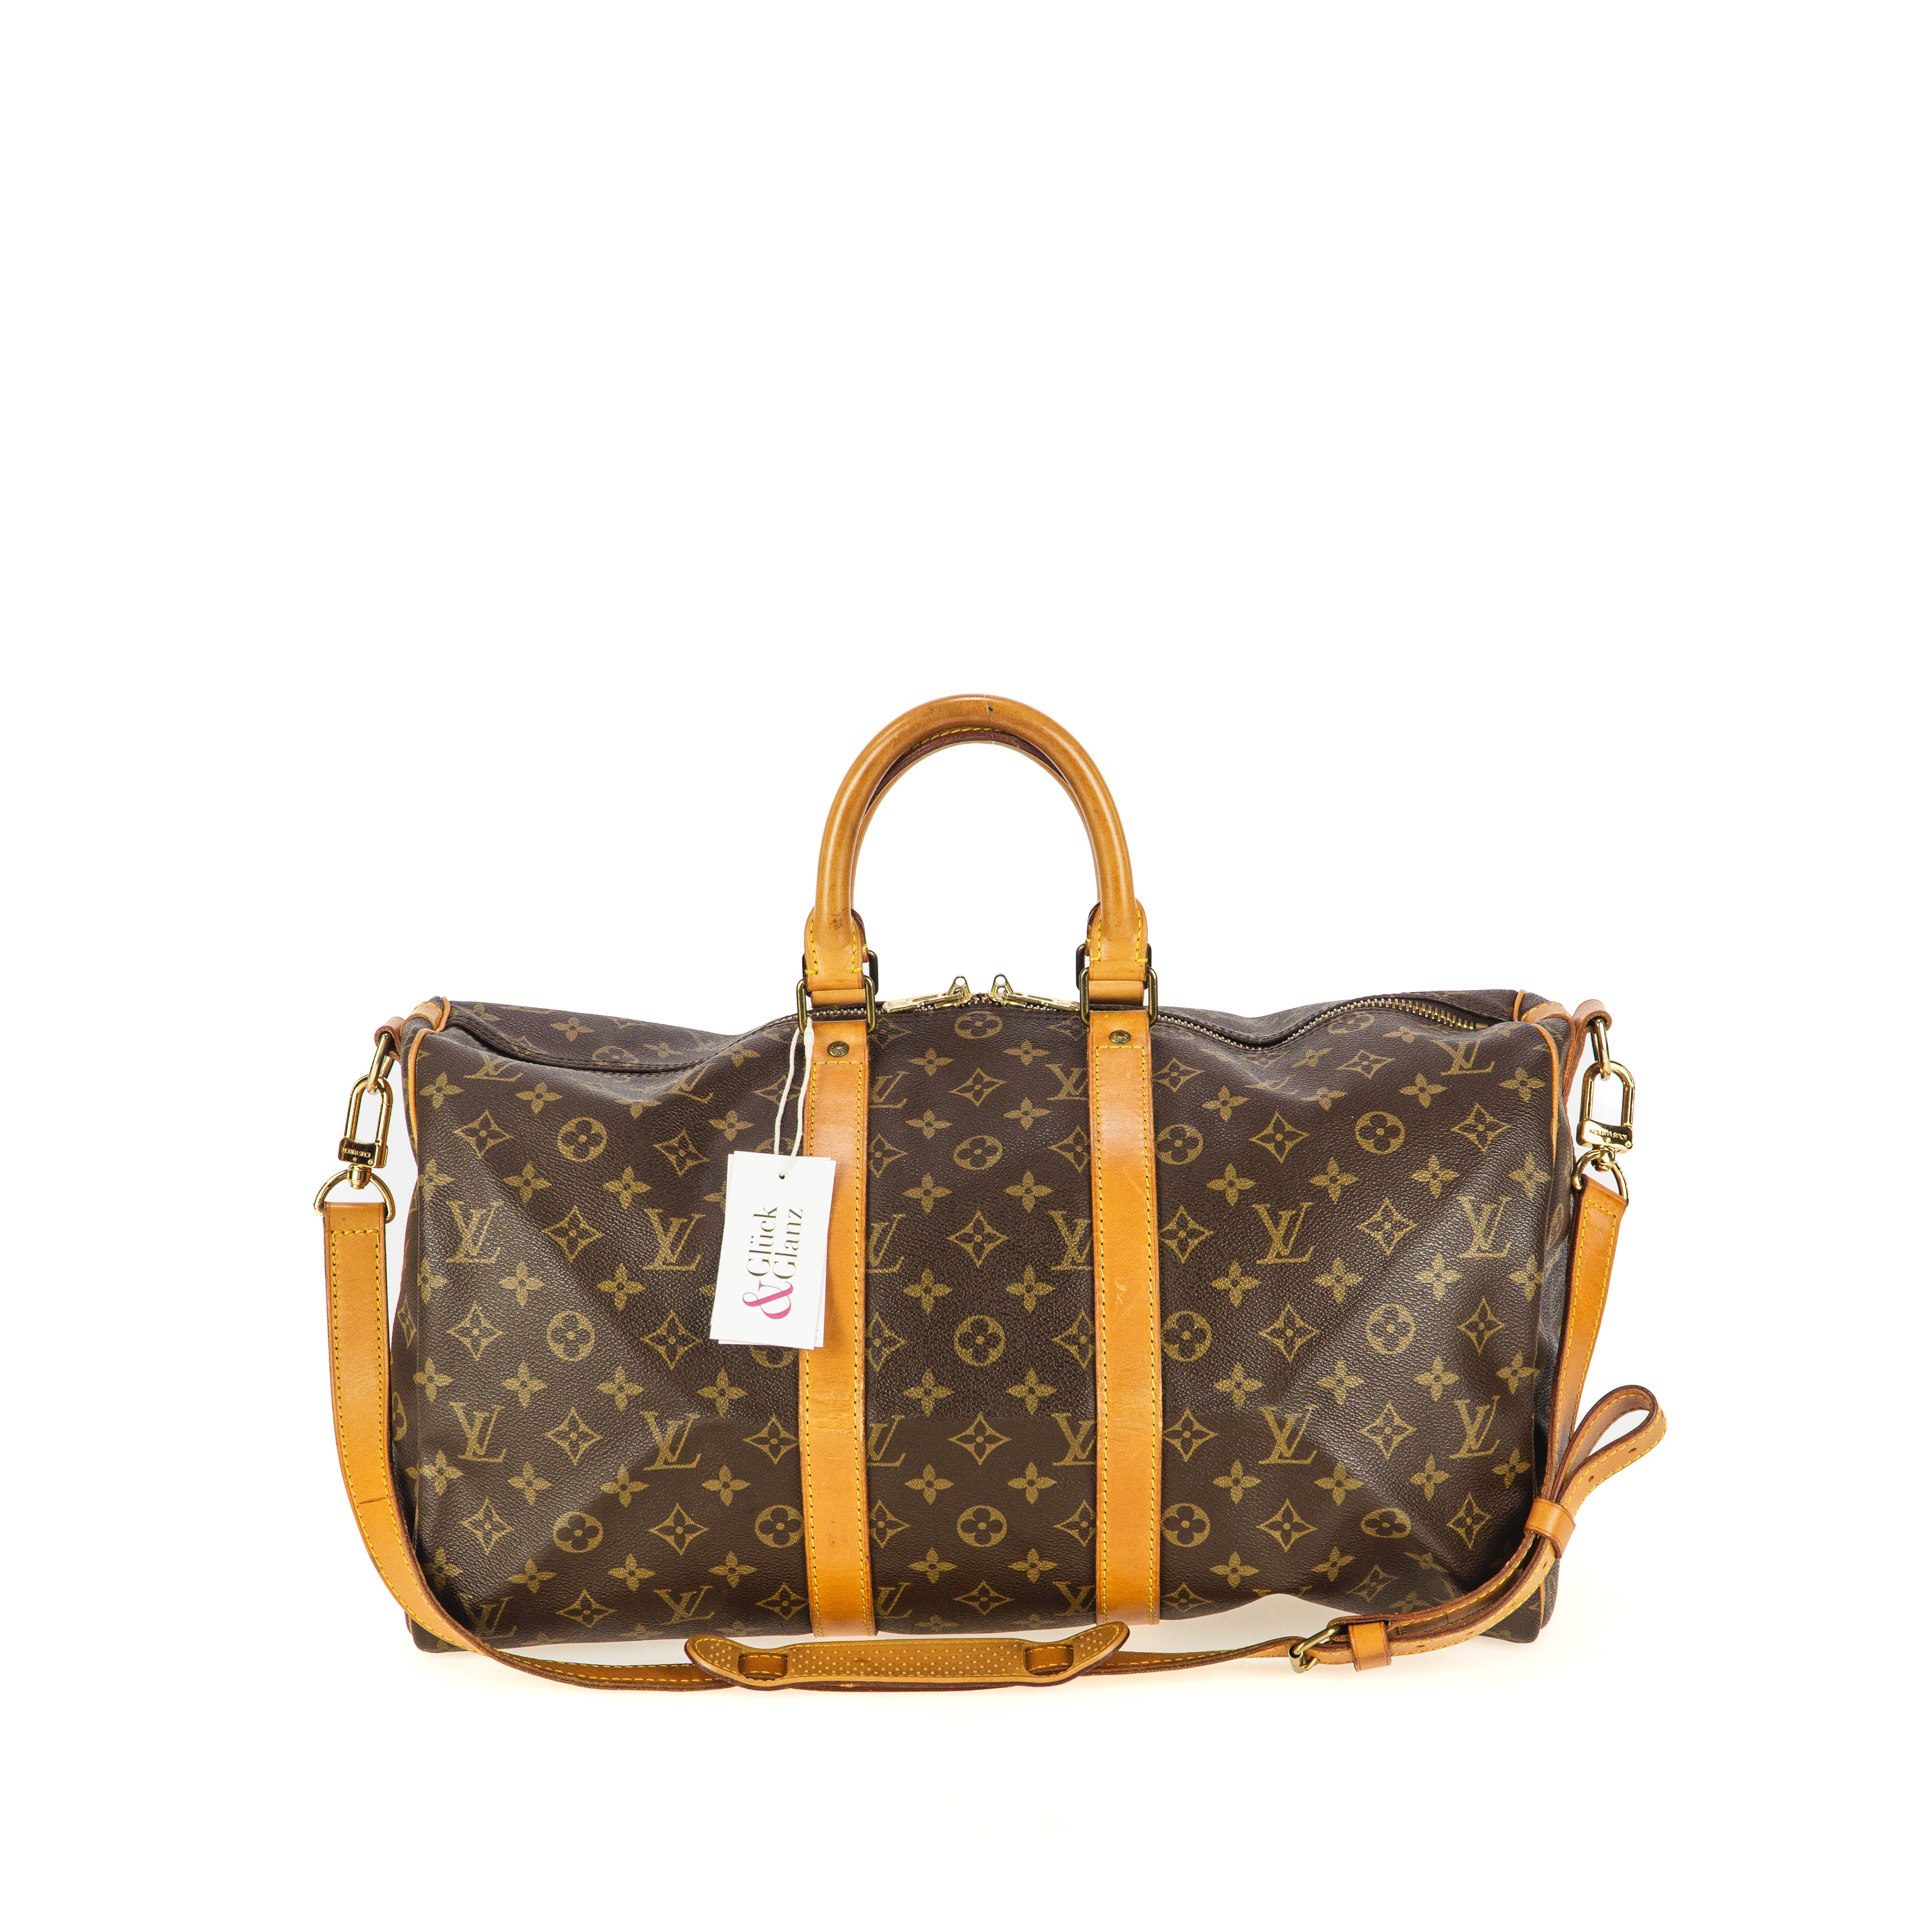 Louis Vuitton Reisetaschen günstig kaufen, Second Hand